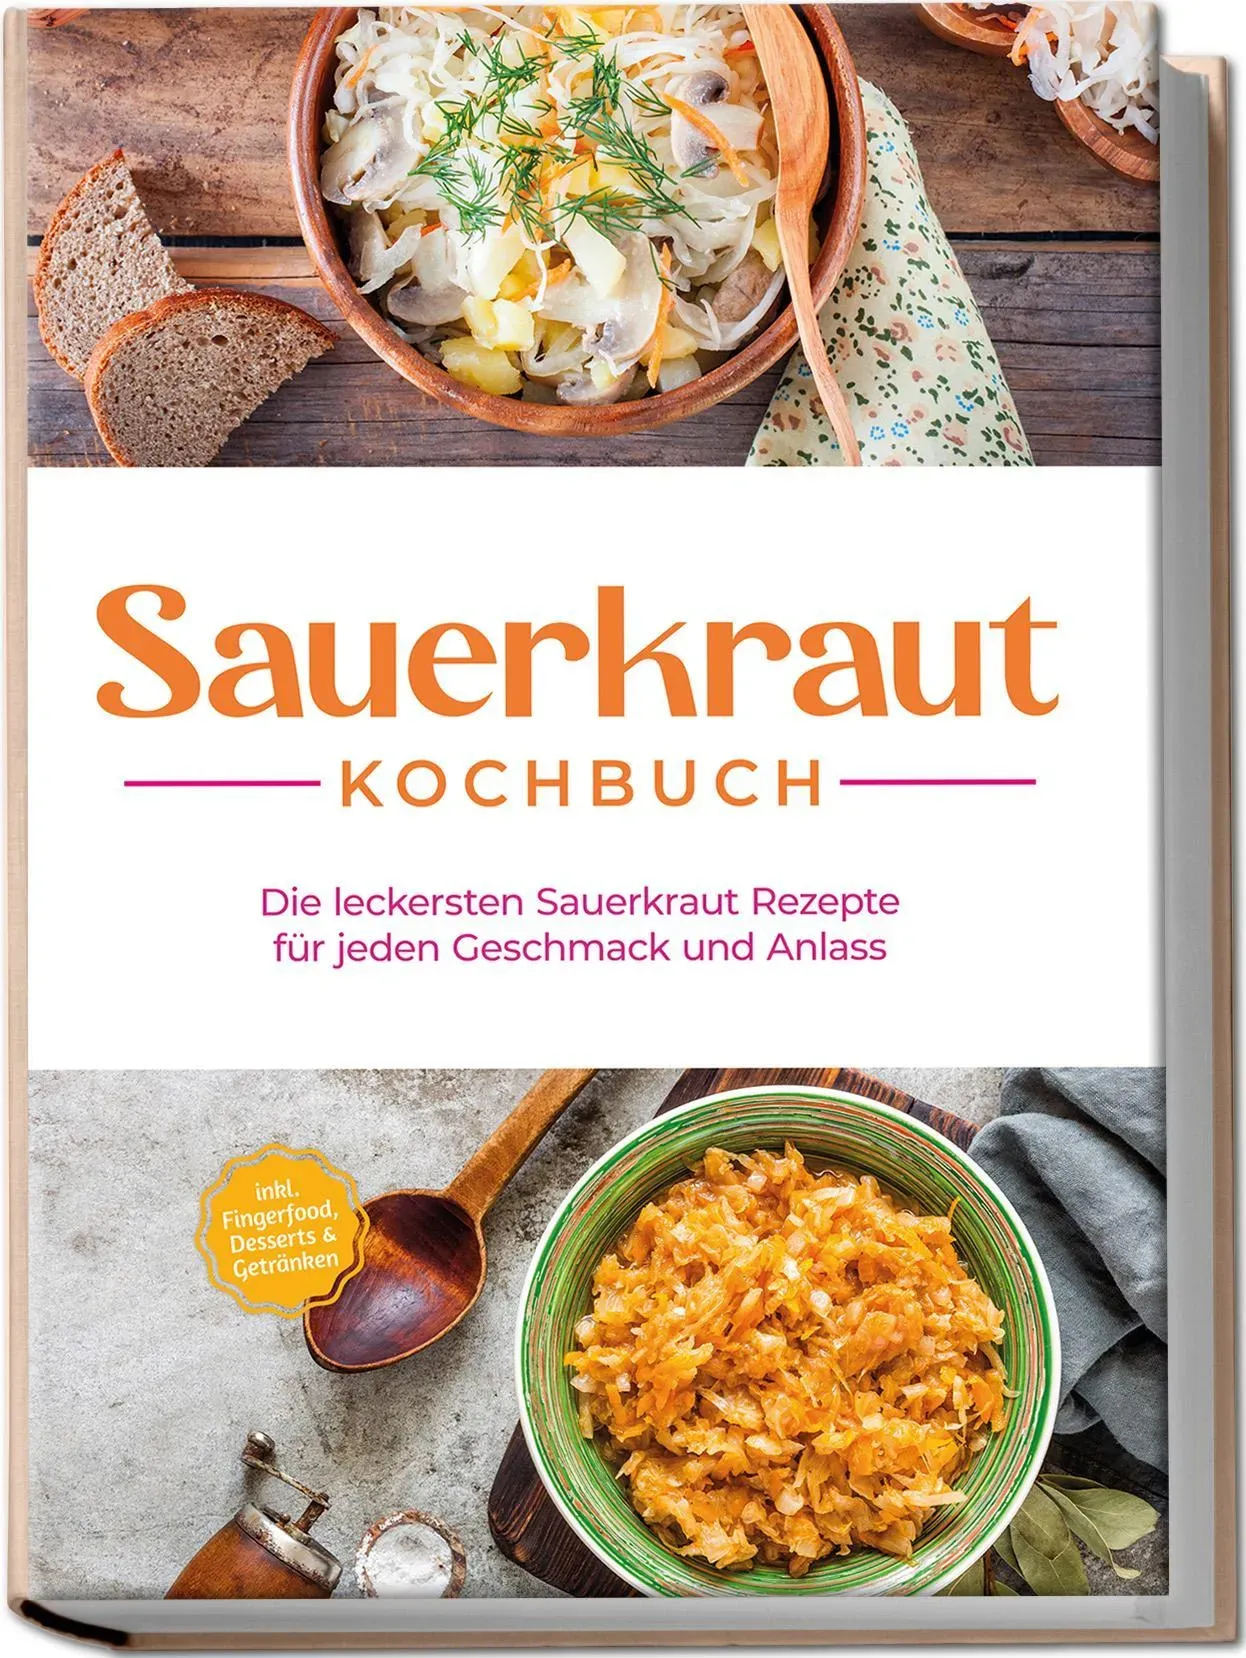 Sauerkraut Kochbuch: Die Leckersten Sauerkraut Rezepte Für Jeden Geschmack Und Anlass - Inkl. Fingerfood  Desserts & Getränken - Cornelia Lameyer  Tas